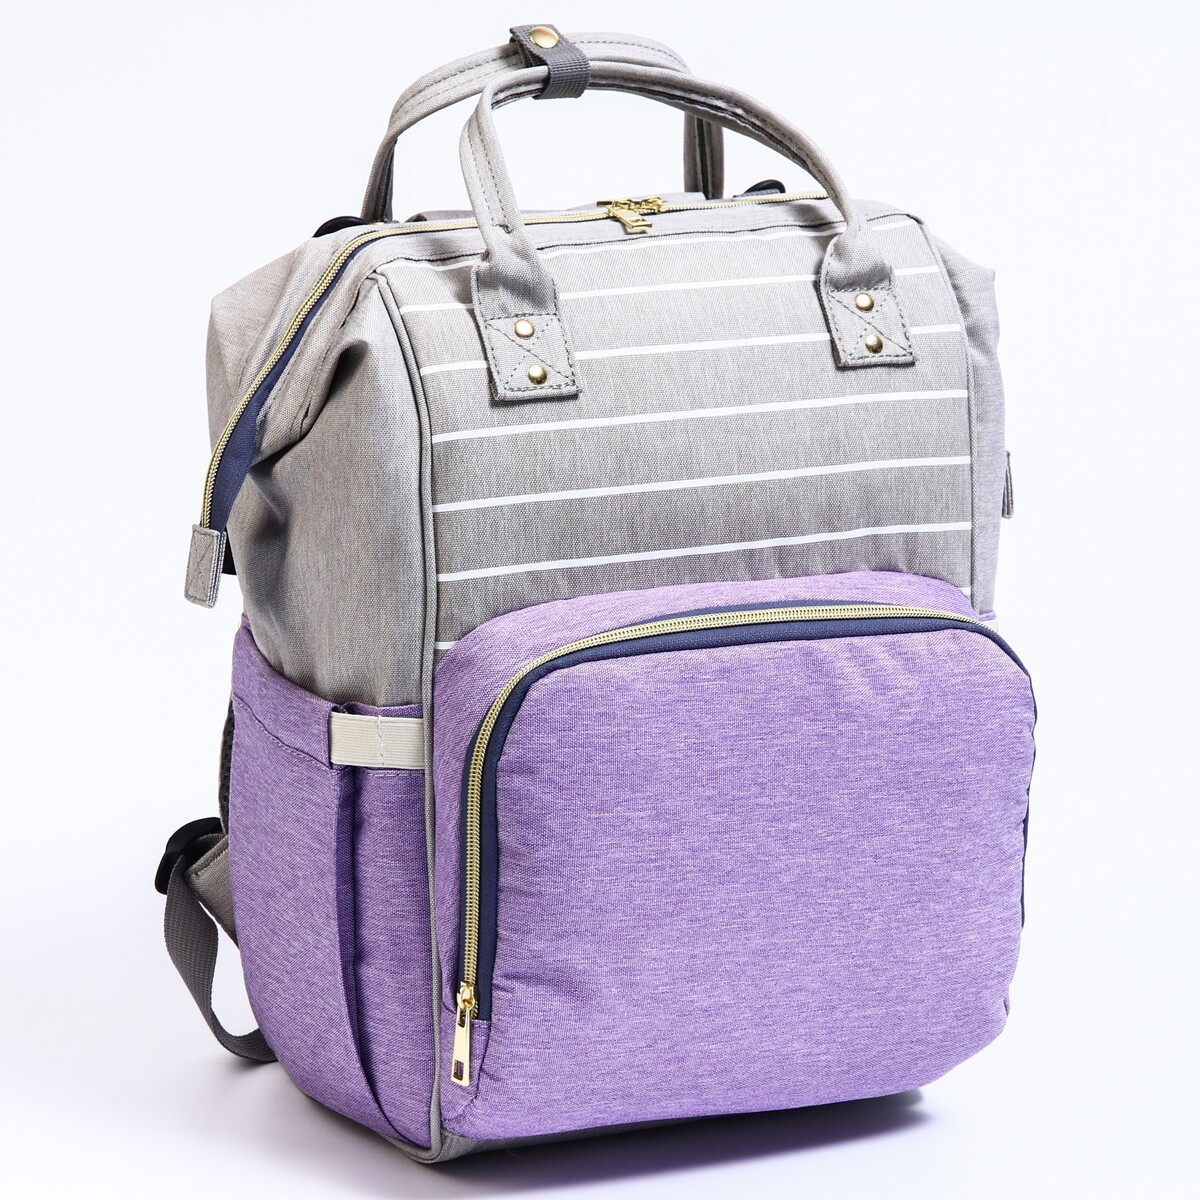 Рюкзак женский с термокарманом, термосумка - портфель, цвет серый/фиолетовый рюкзак kingkong i 10 wb 9062 черн средний фоторюкзак